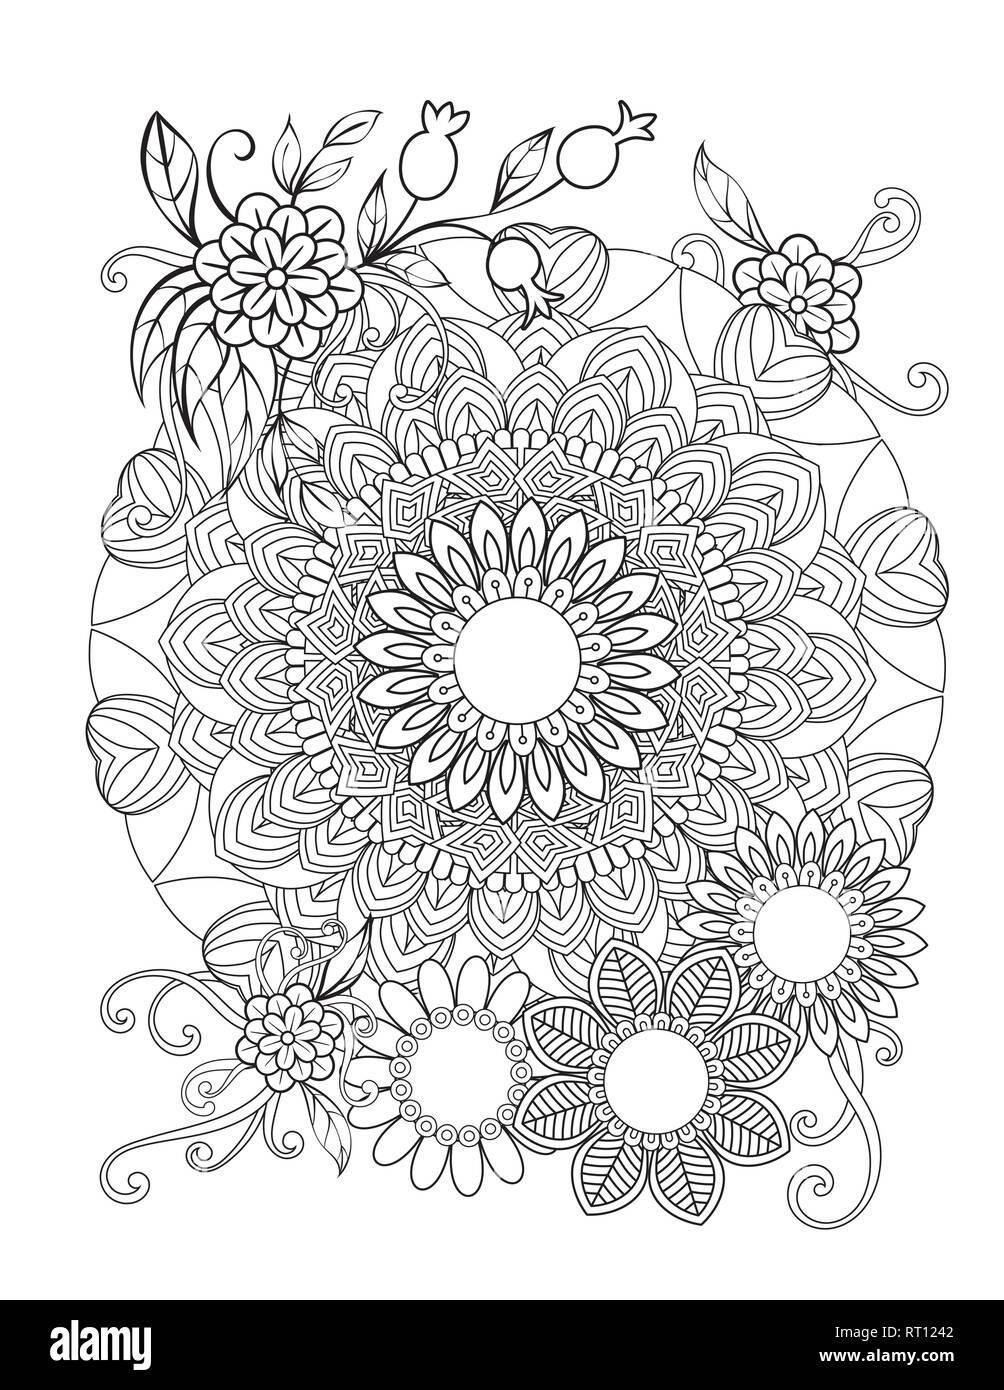 Mandala florale Muster in Schwarz und Weiß. Nach Malbuch Seite mit Blumen und Mandalas. Orientalische Muster, Vintage dekorative Elemente. Stock Vektor